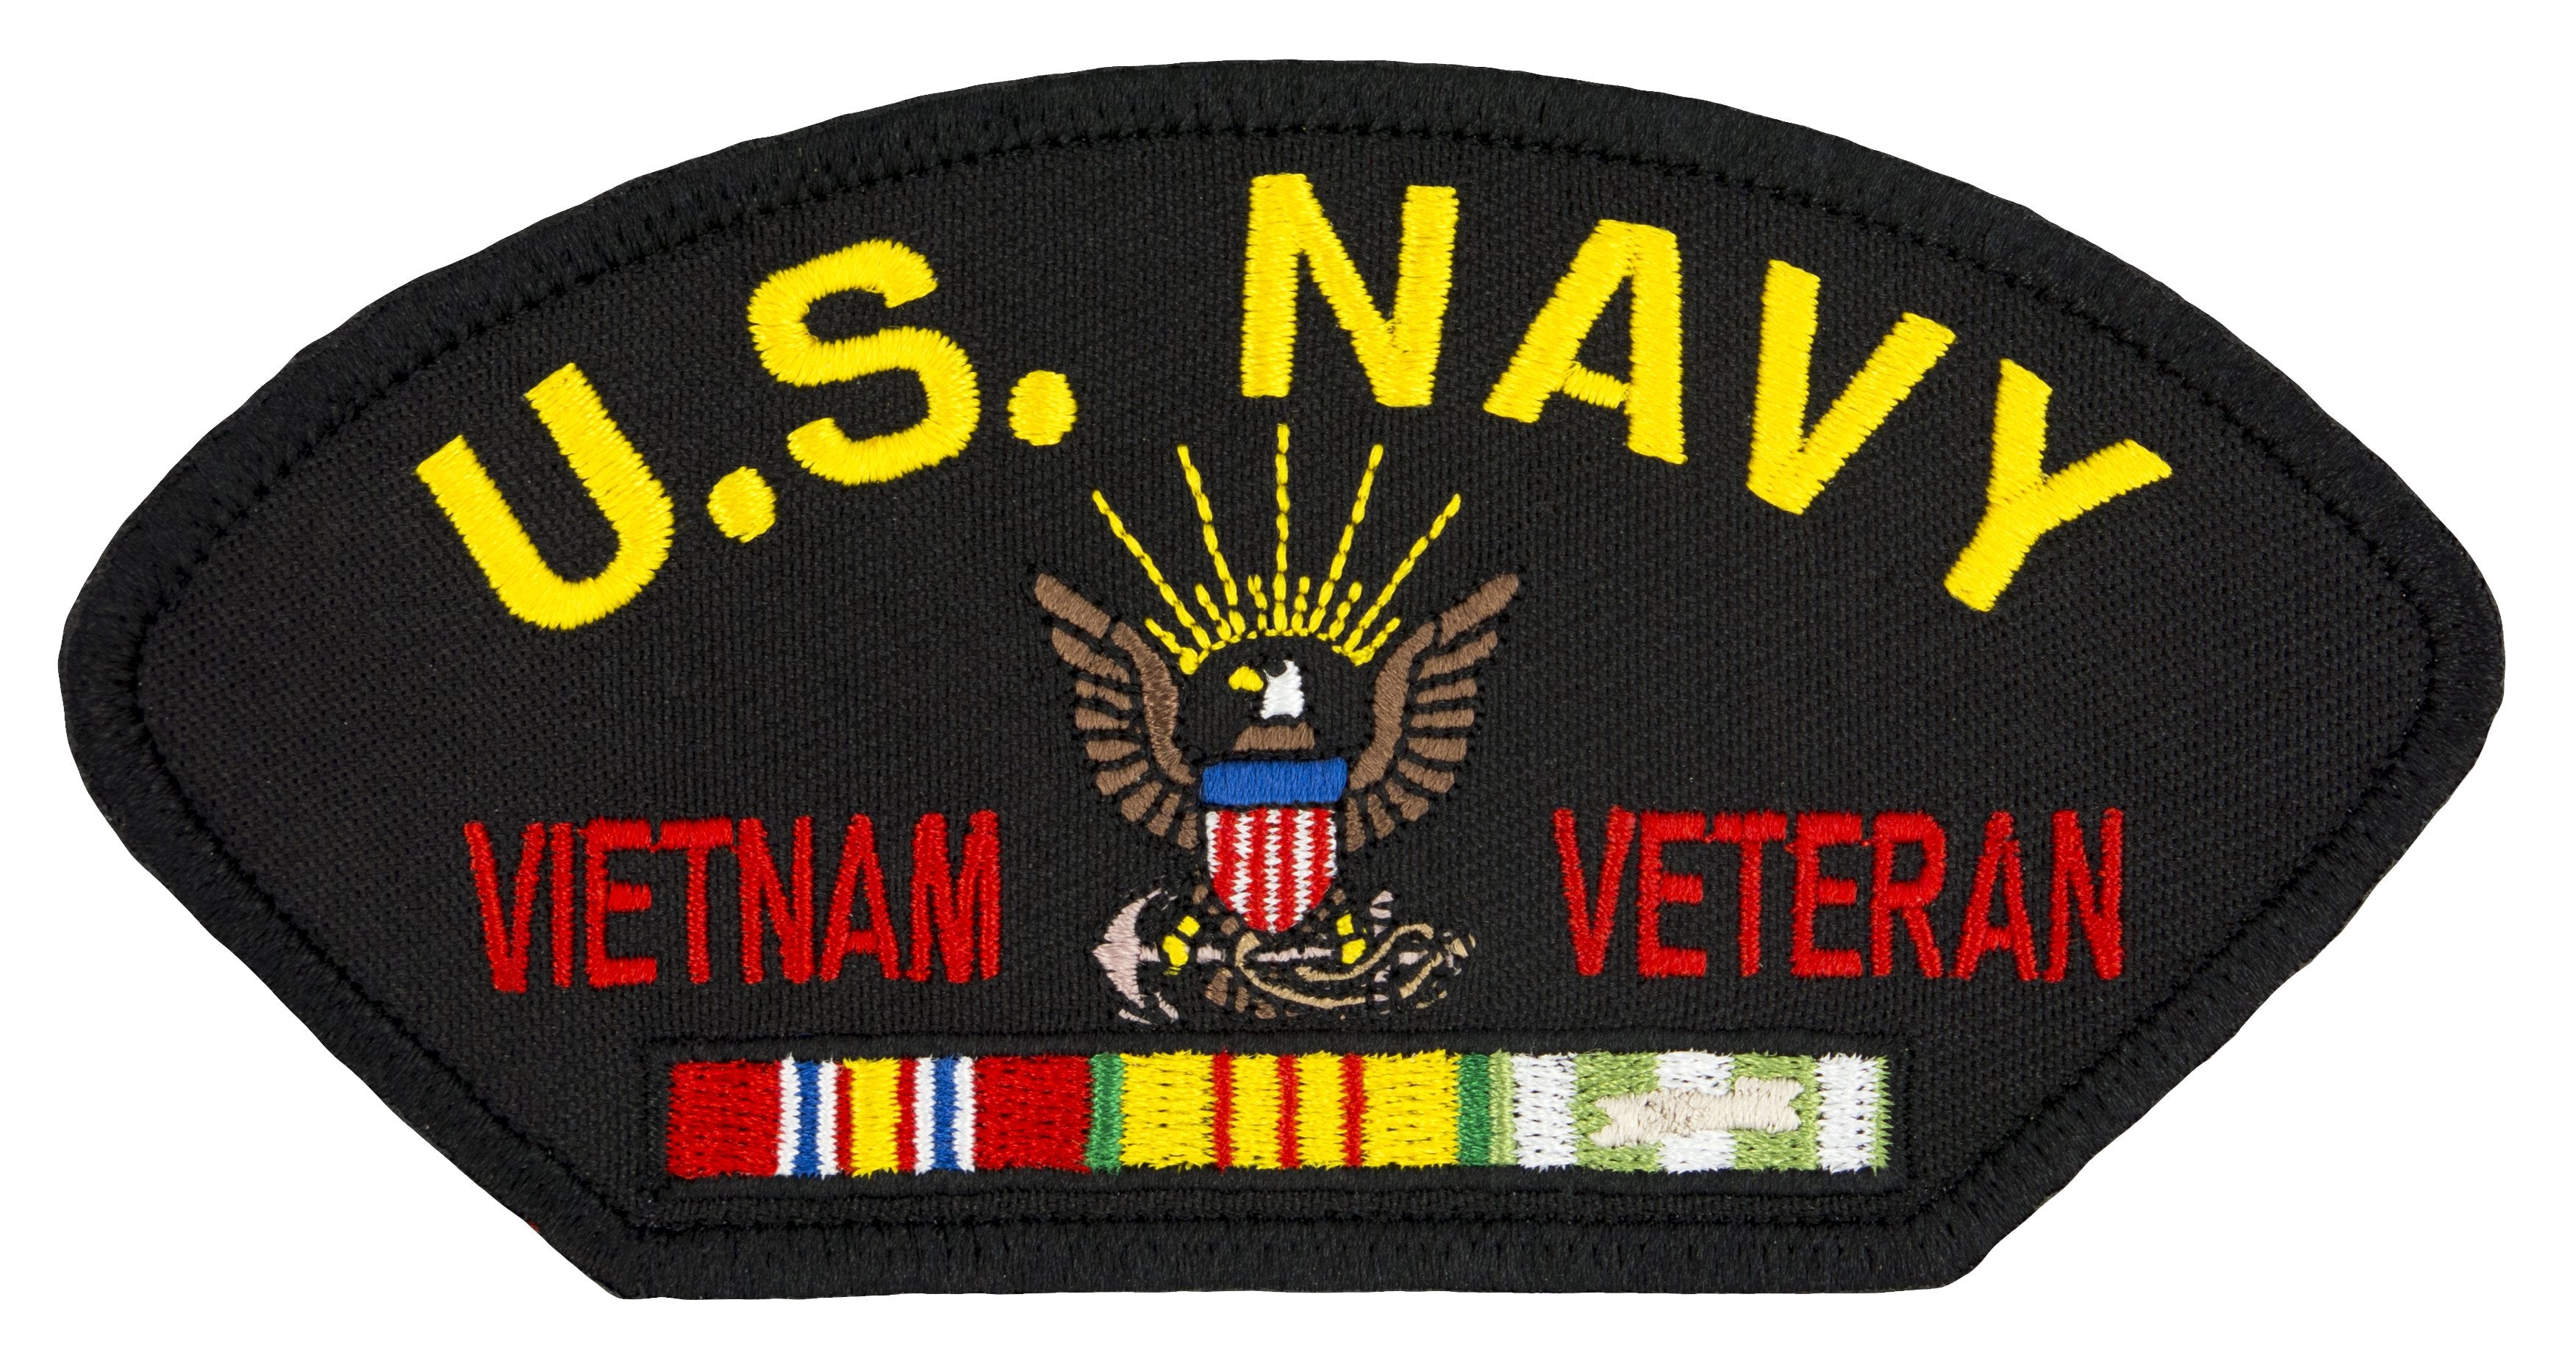 US Navy Vietnam War Veteran Embroidered Patch 5 3/16" x 2 5/8"